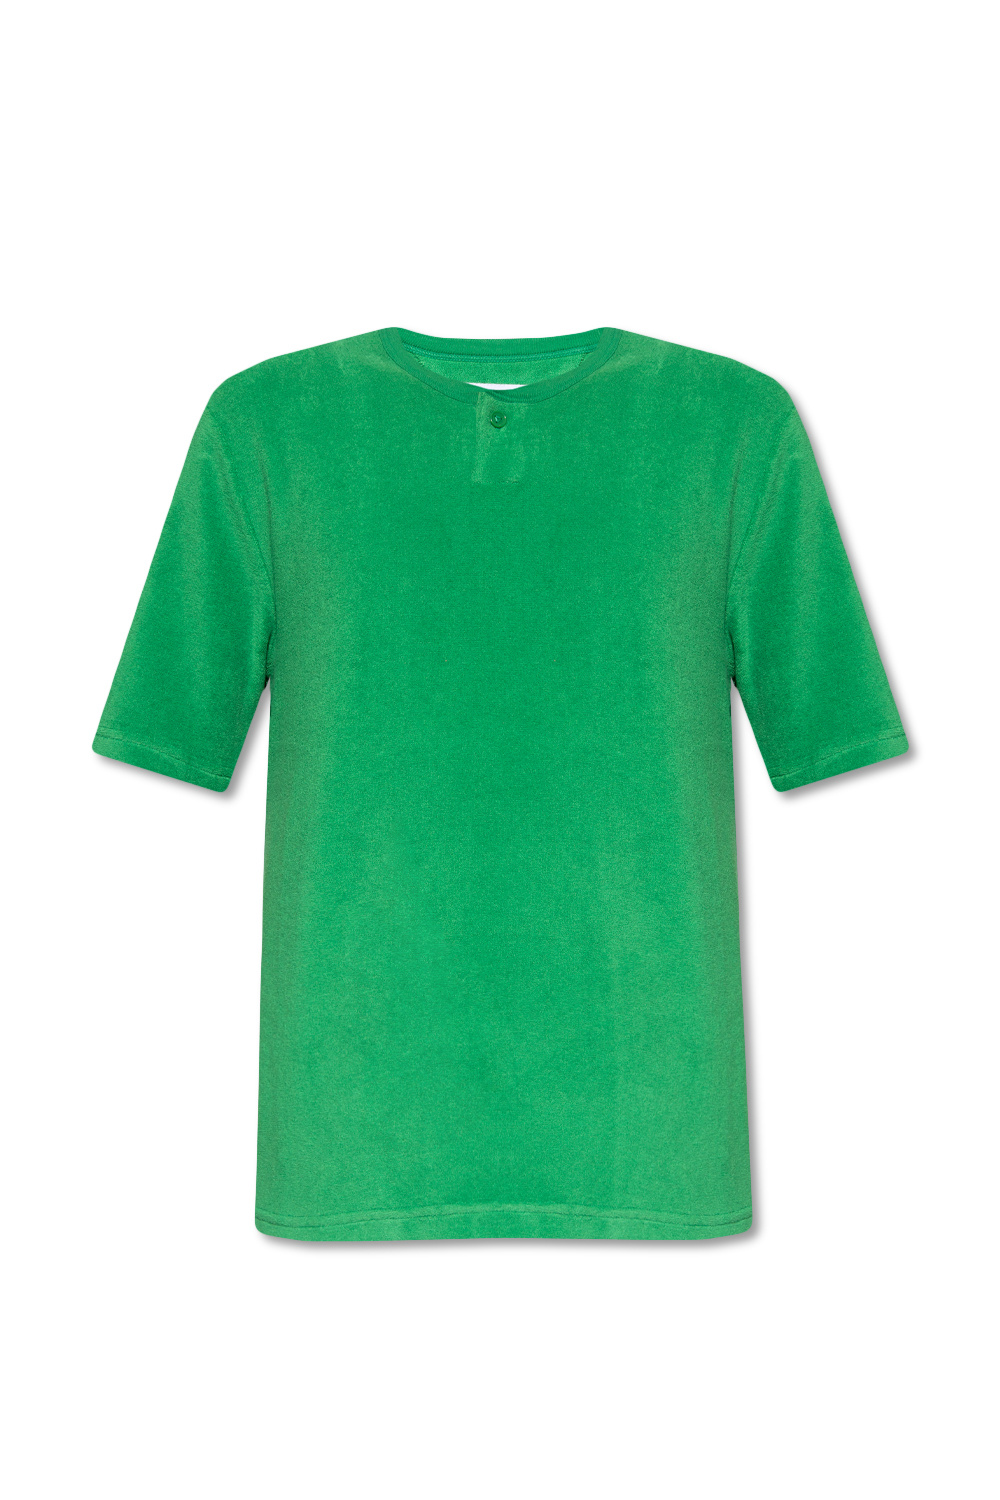 Bottega Veneta Terry T-shirt | Men's Clothing | Vitkac